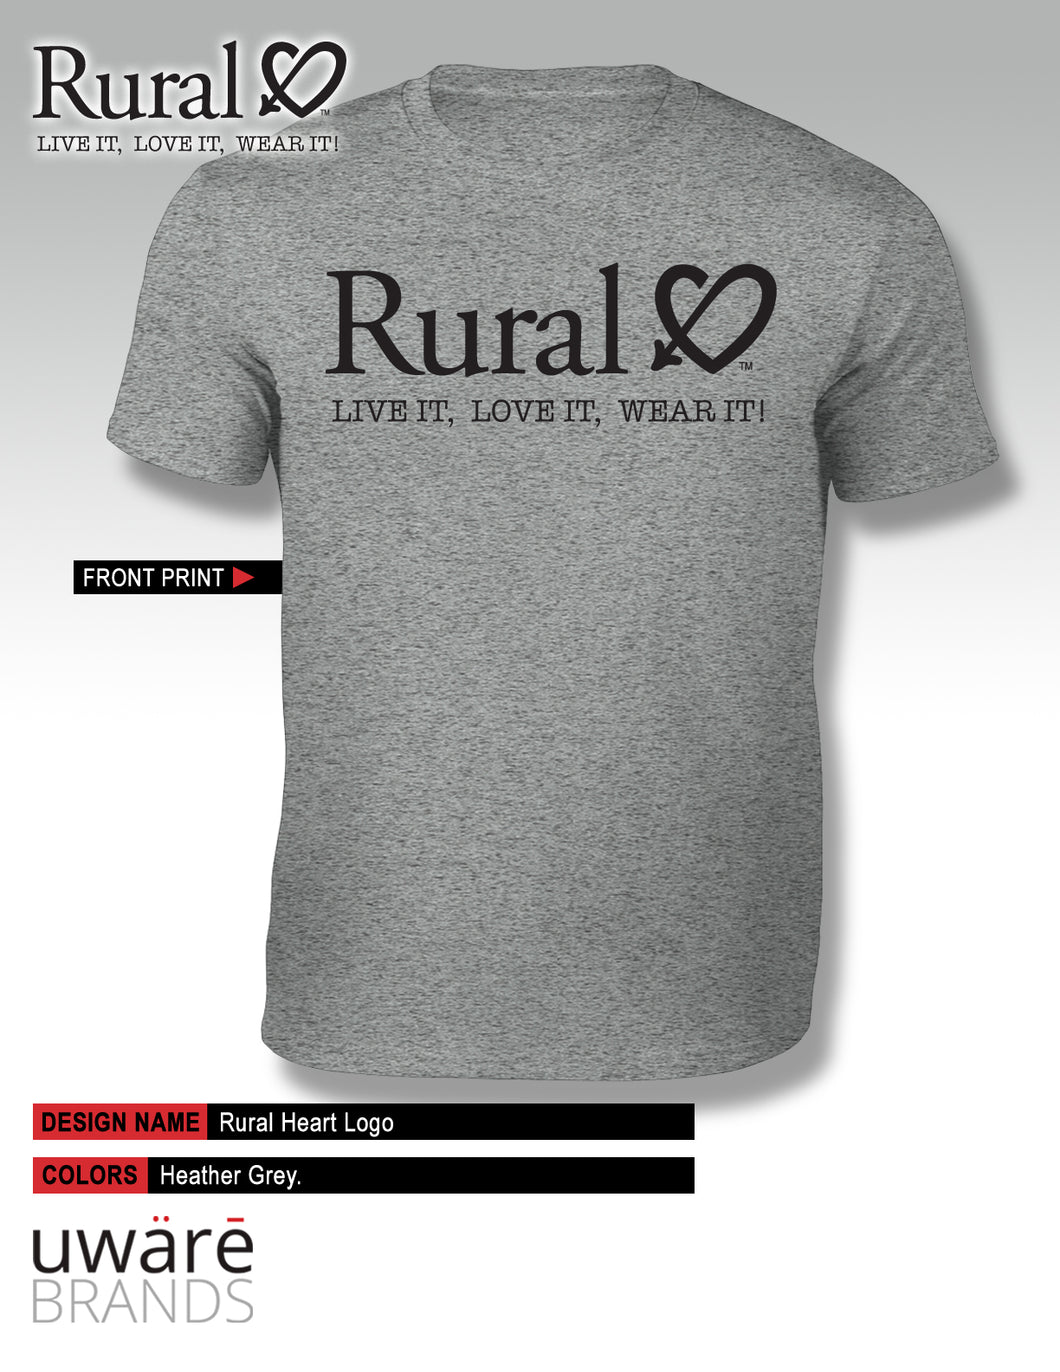 Rural Heart™ Logo Shirt! Live It, Love It, Wear It!